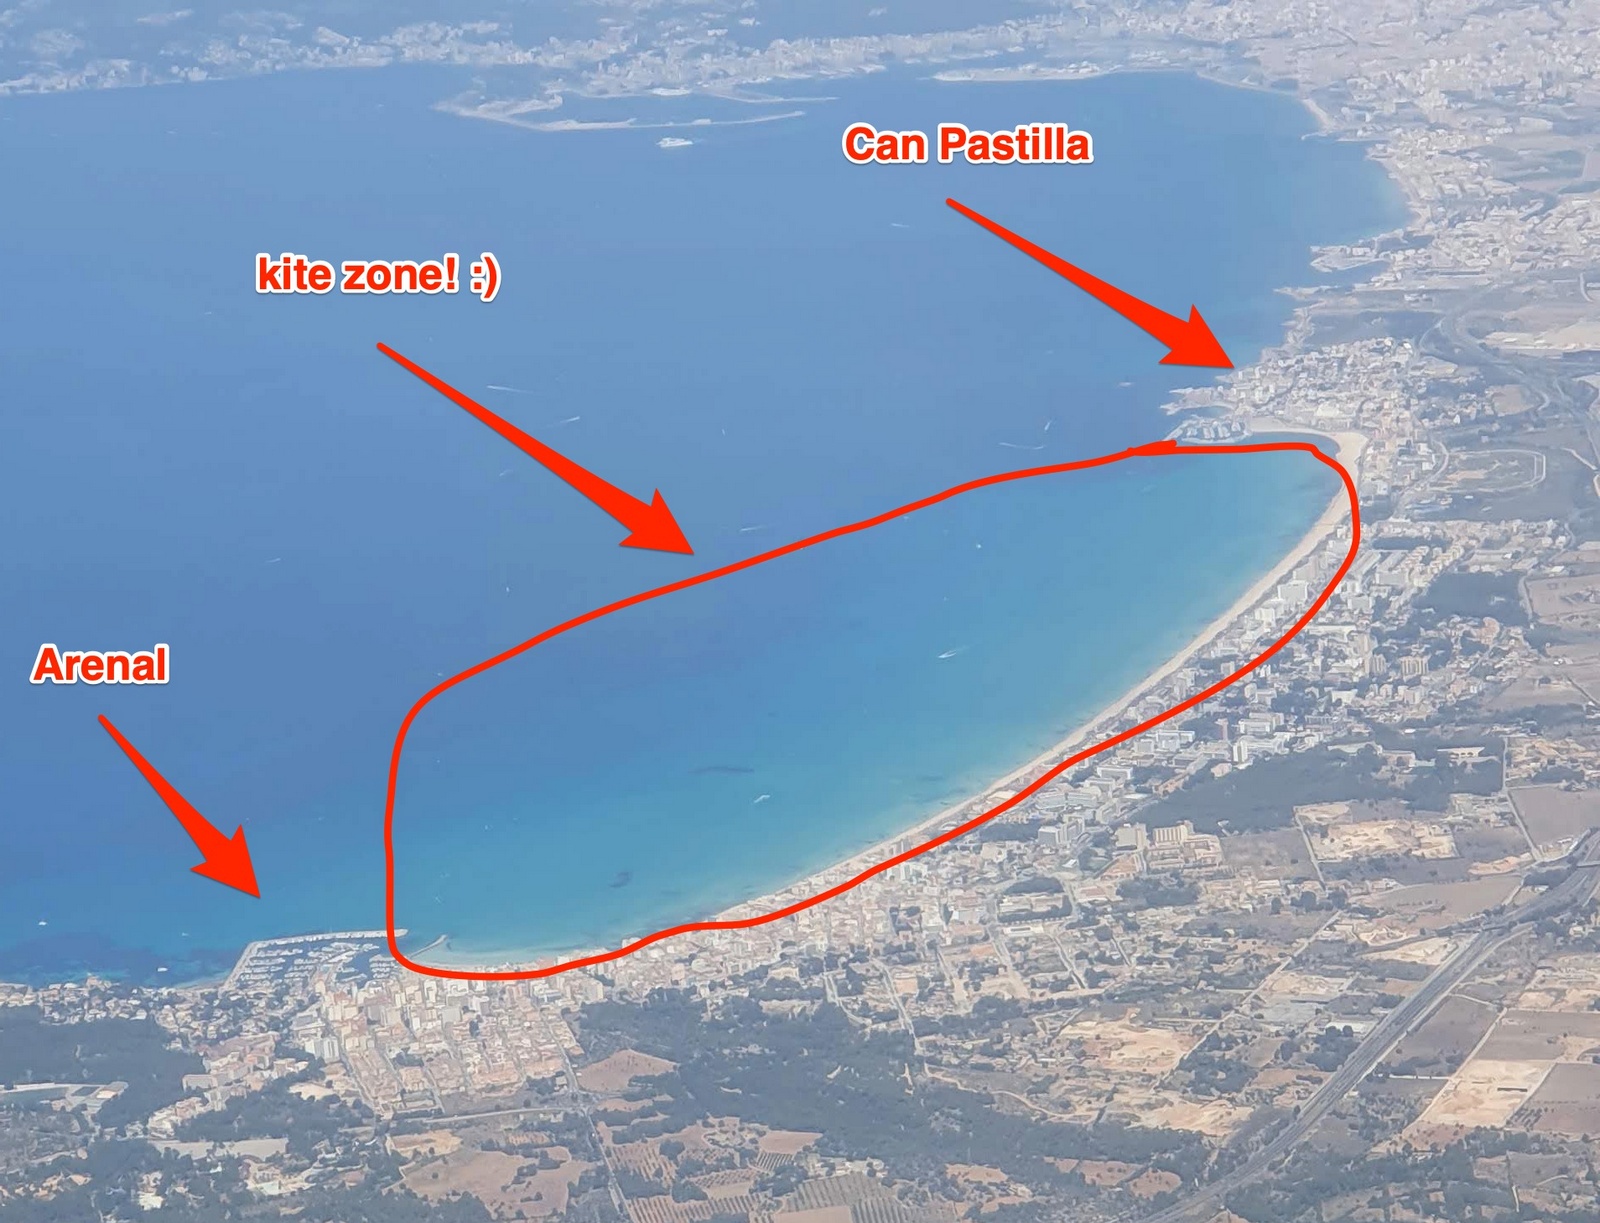 Kite and wing zone in Can Pastilla, Mallorca